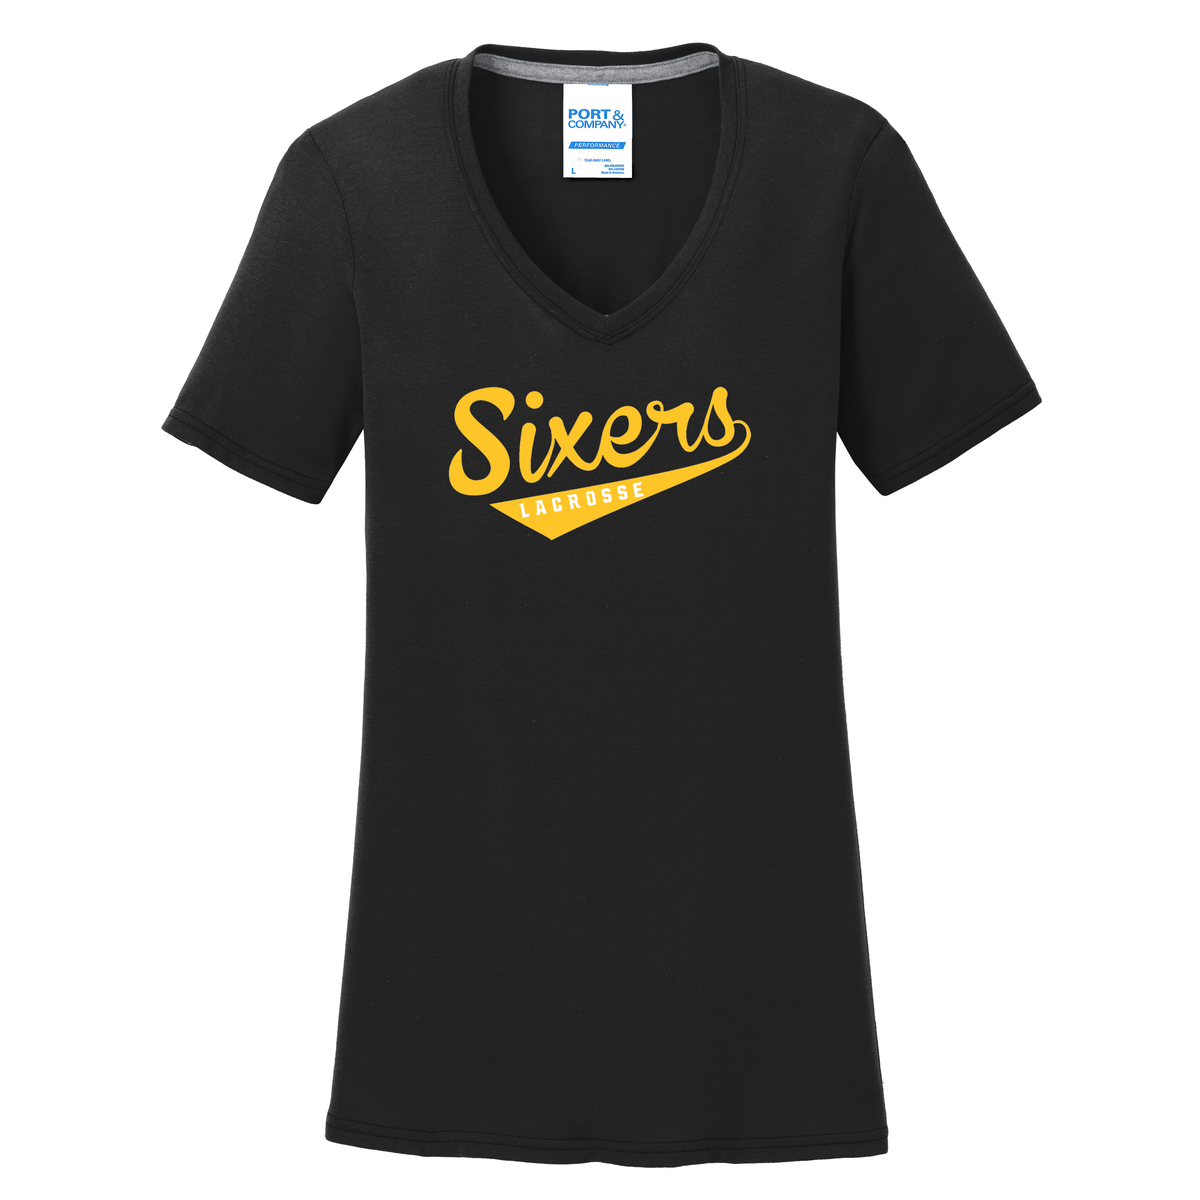 Sixers Lacrosse Women's T-Shirt